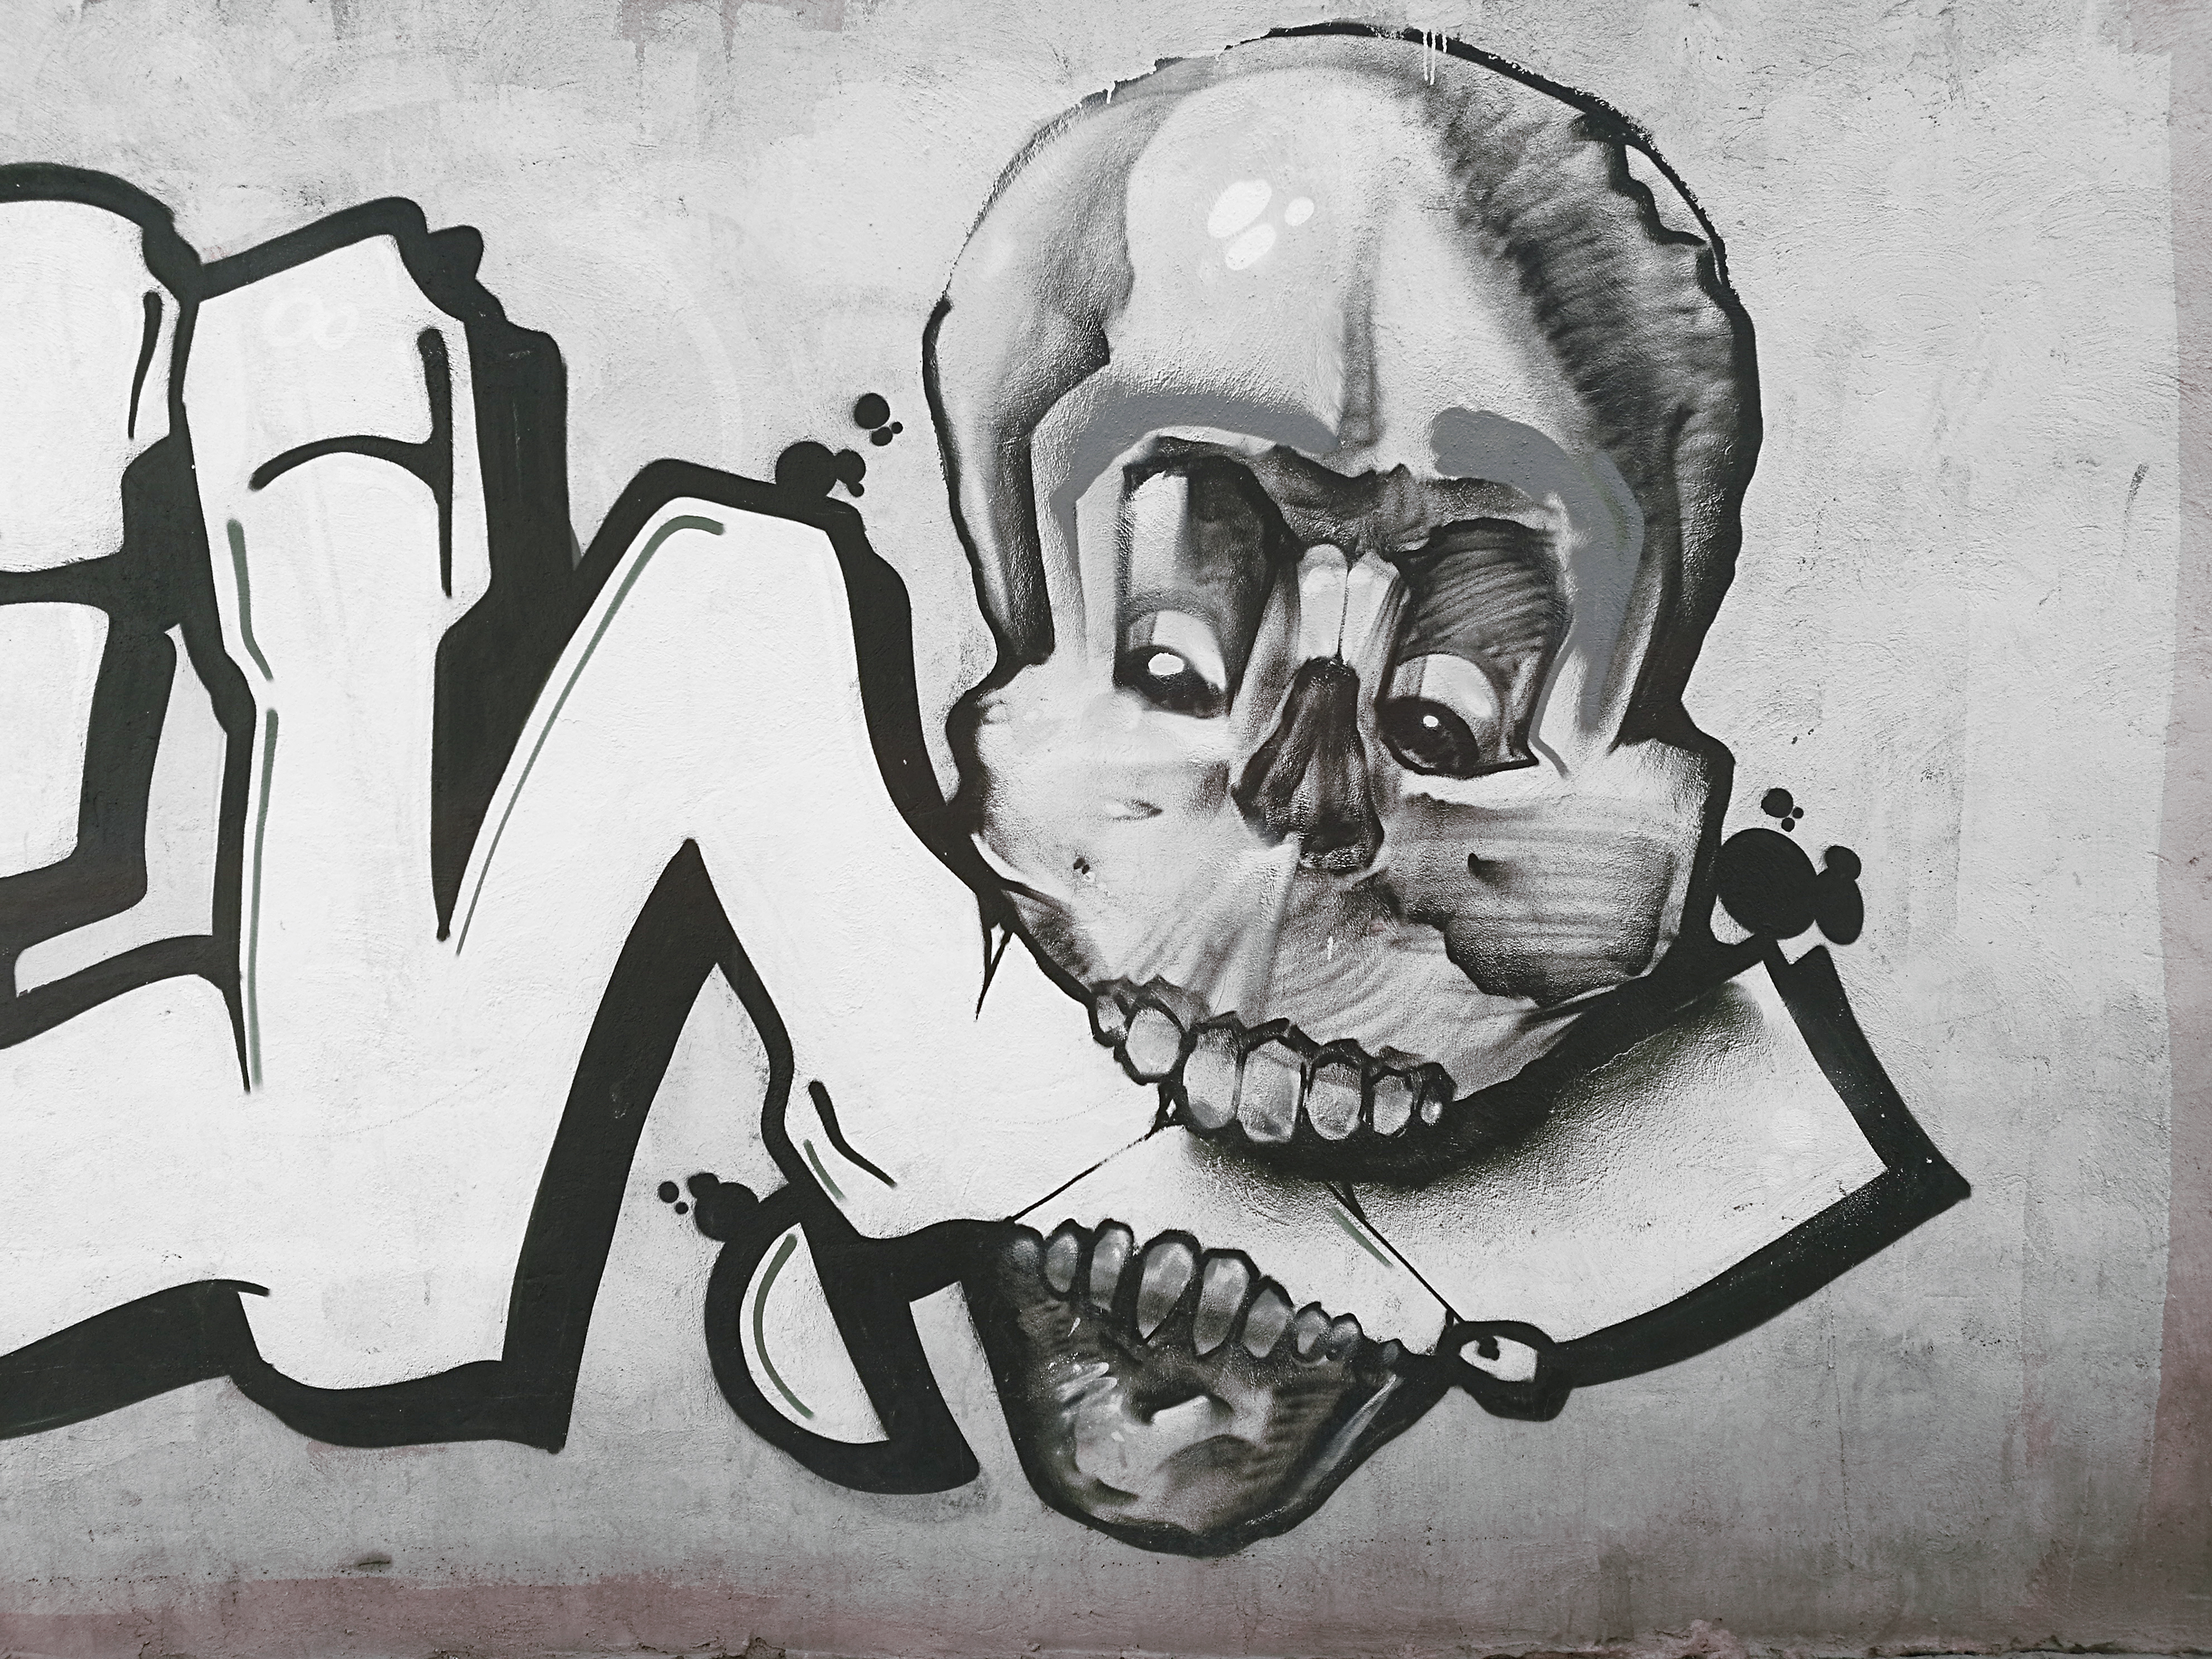 Skull Graffiti – notaselfie